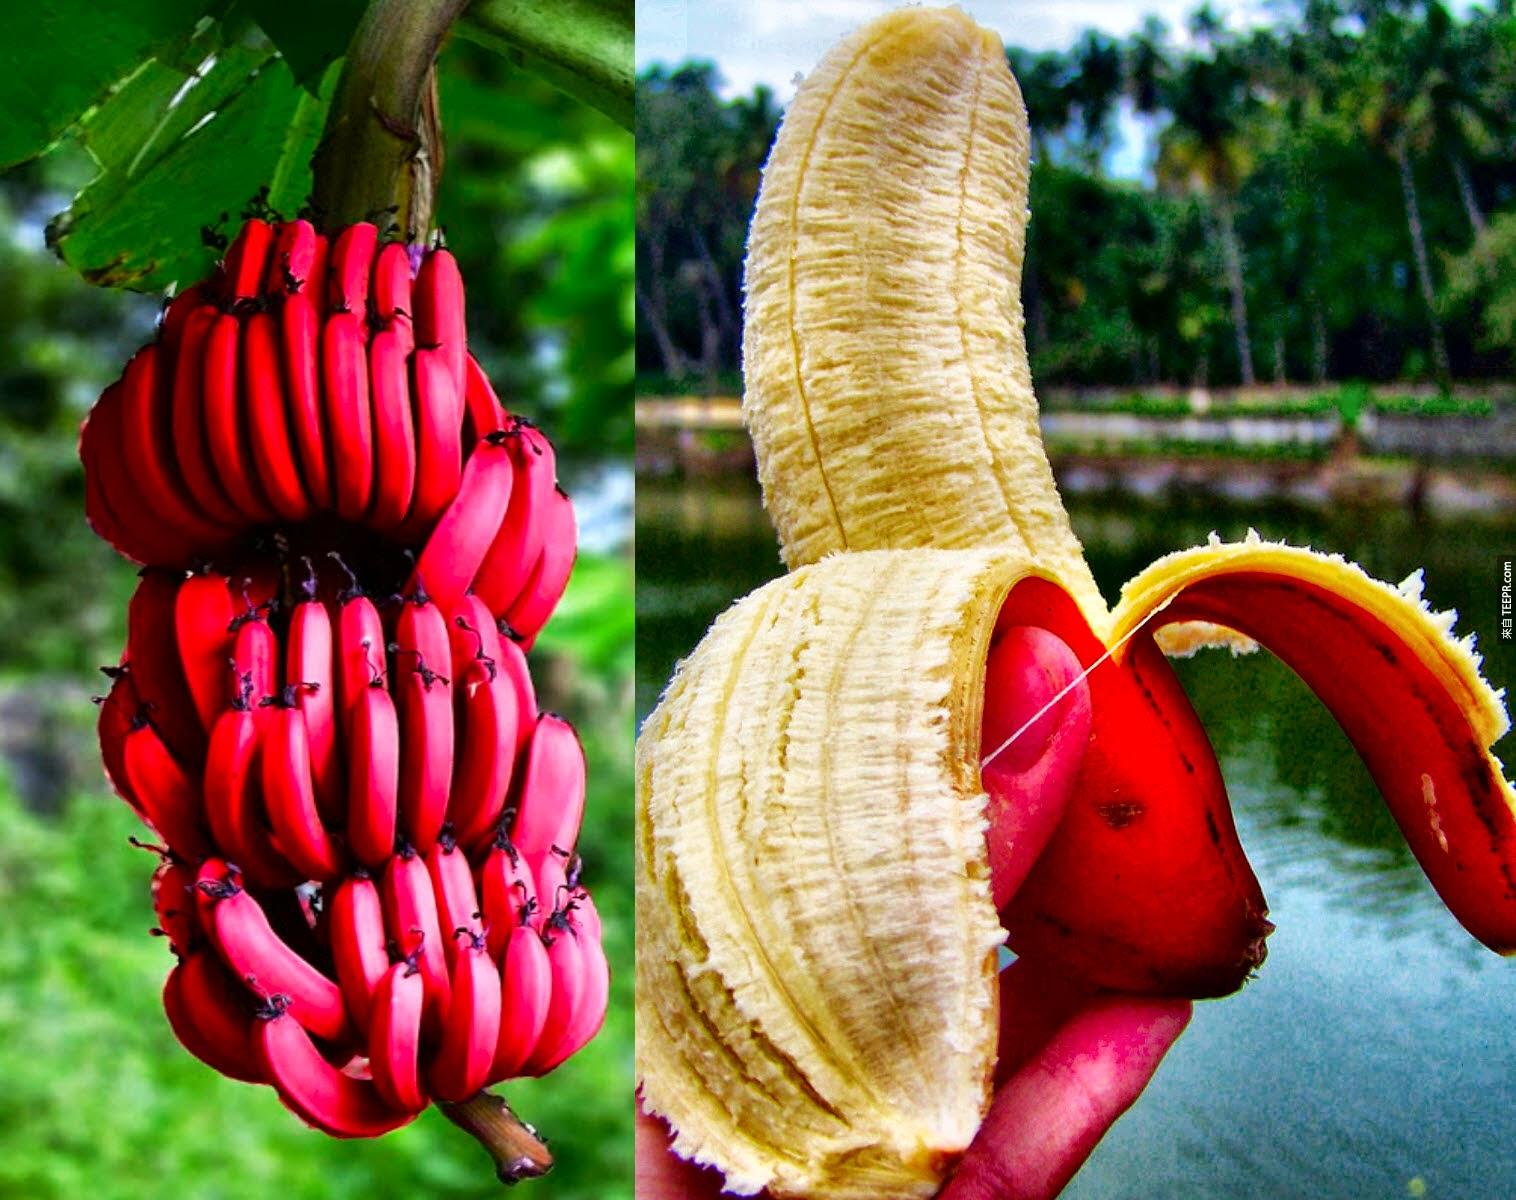 澳洲的紅香蕉。